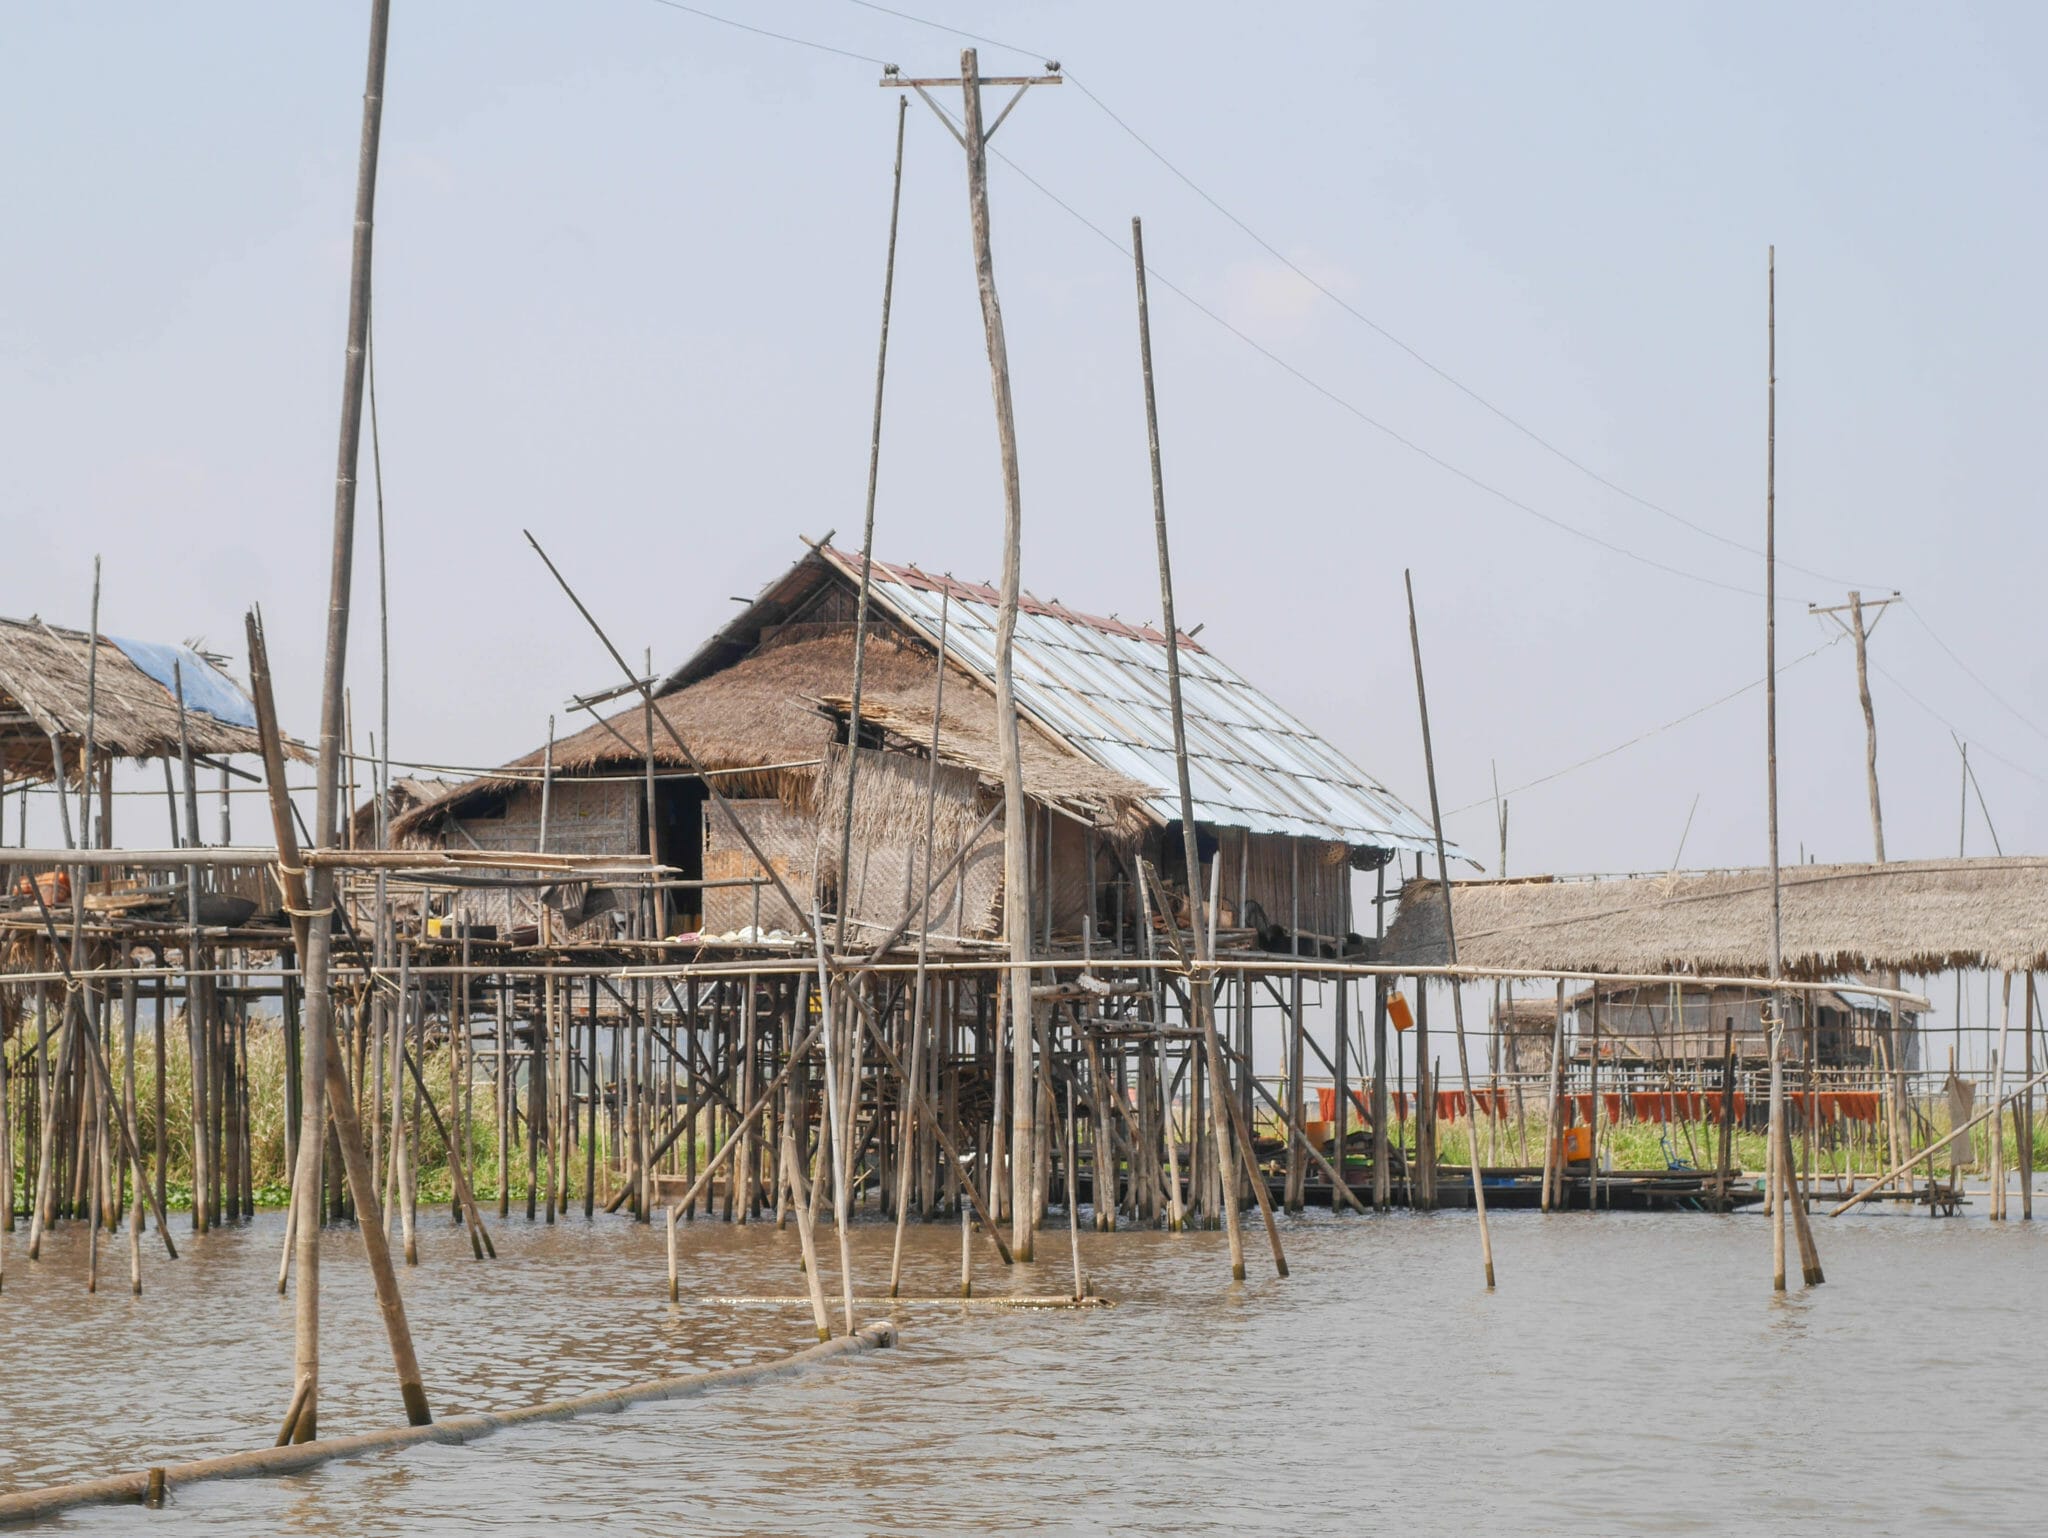 Inle Lake Myanmar